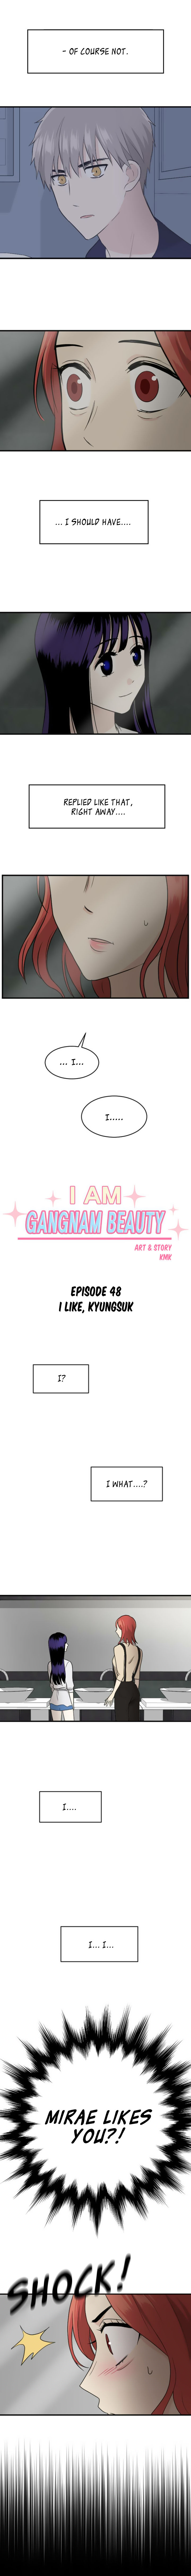 My ID is Gangnam Beauty 48